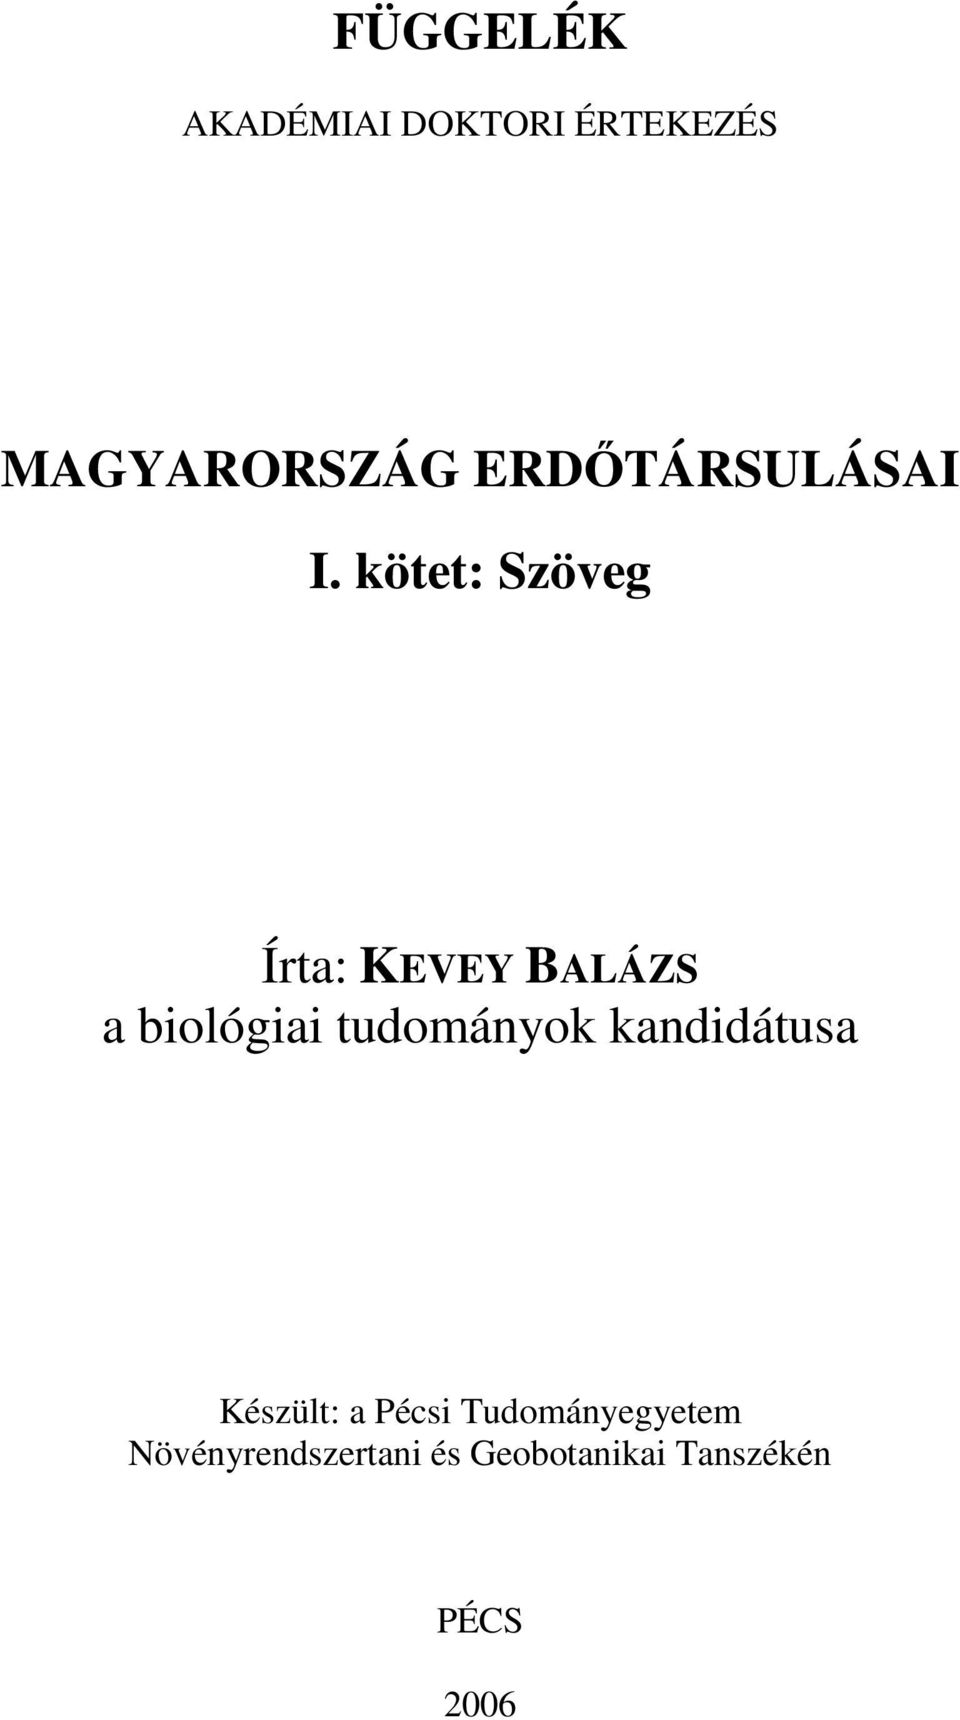 kötet: Szöveg Írta: KEVEY BALÁZS a biológiai tudományok